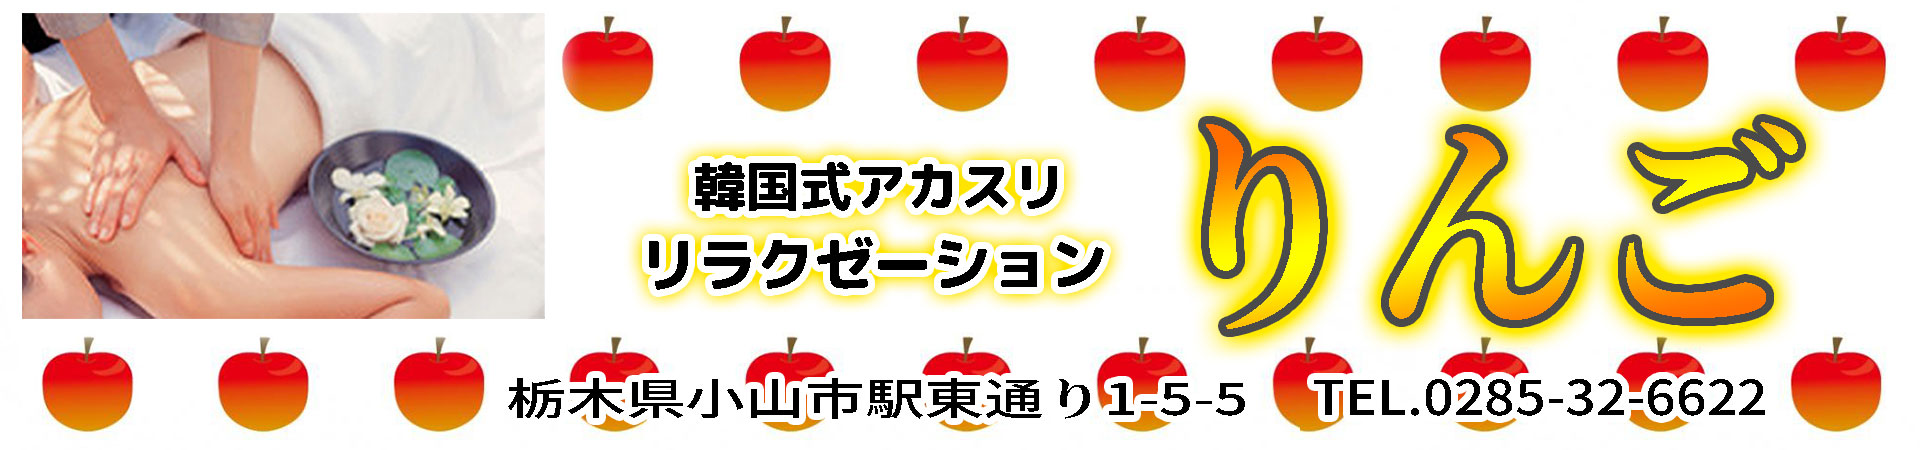 【りんご】小山/栃木